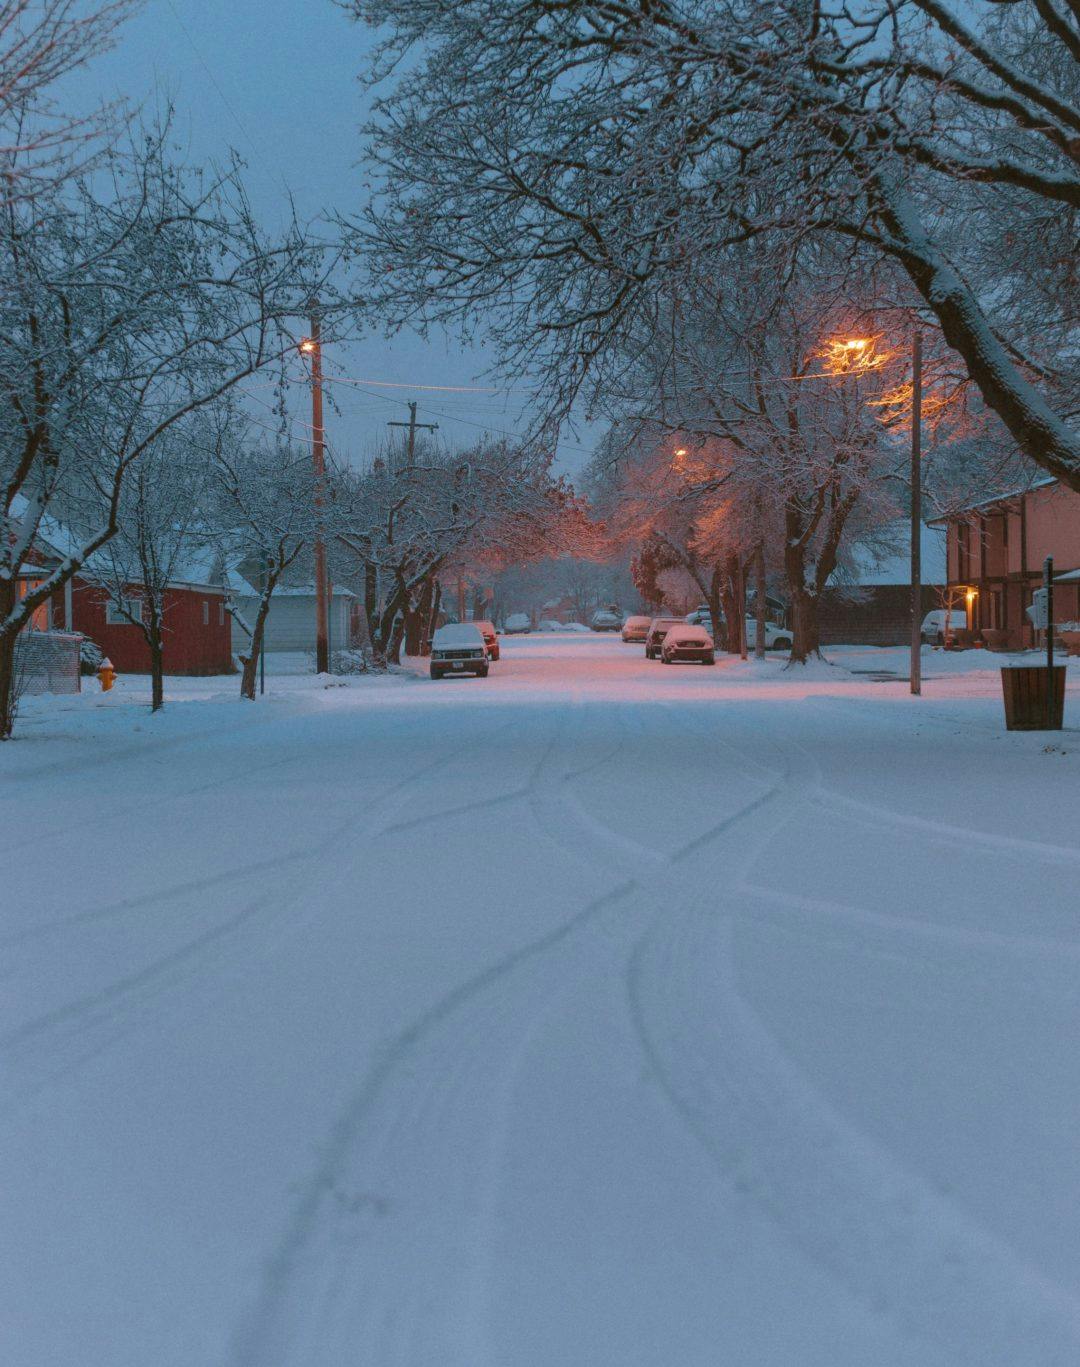 A snowy street in Missoula